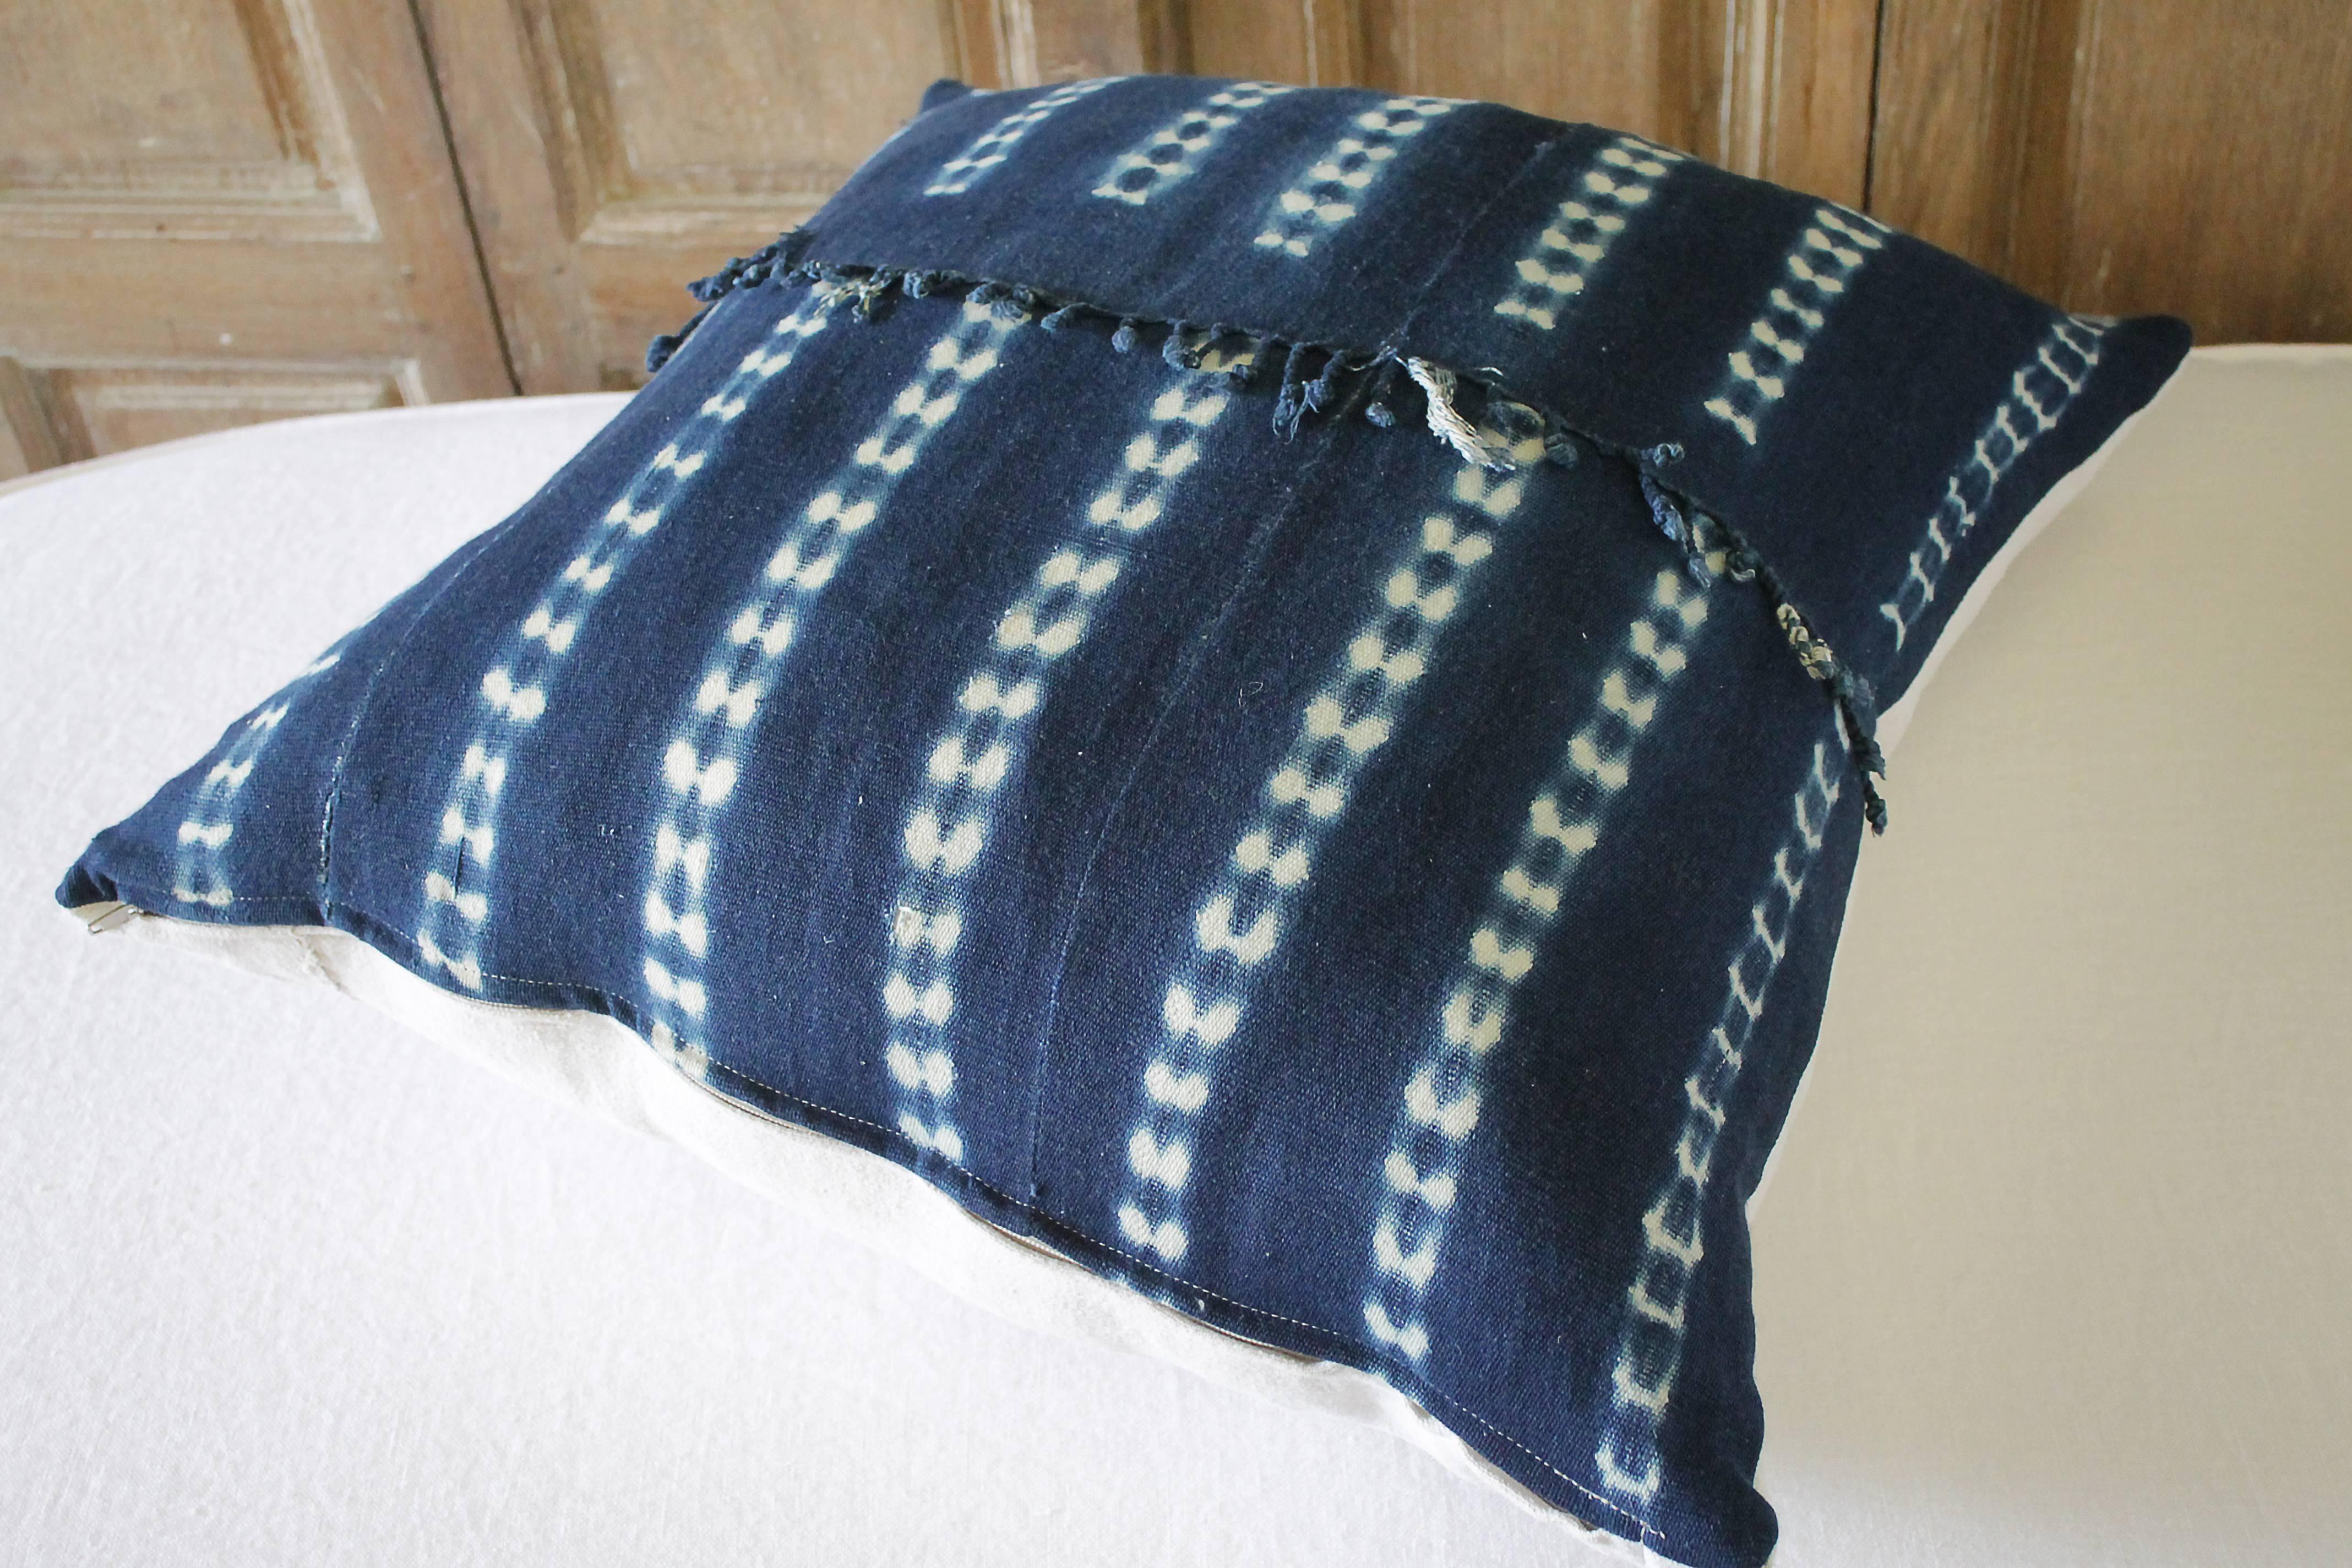 Linen Antique Indigo Blue Batik Accent Pillows with Fringe